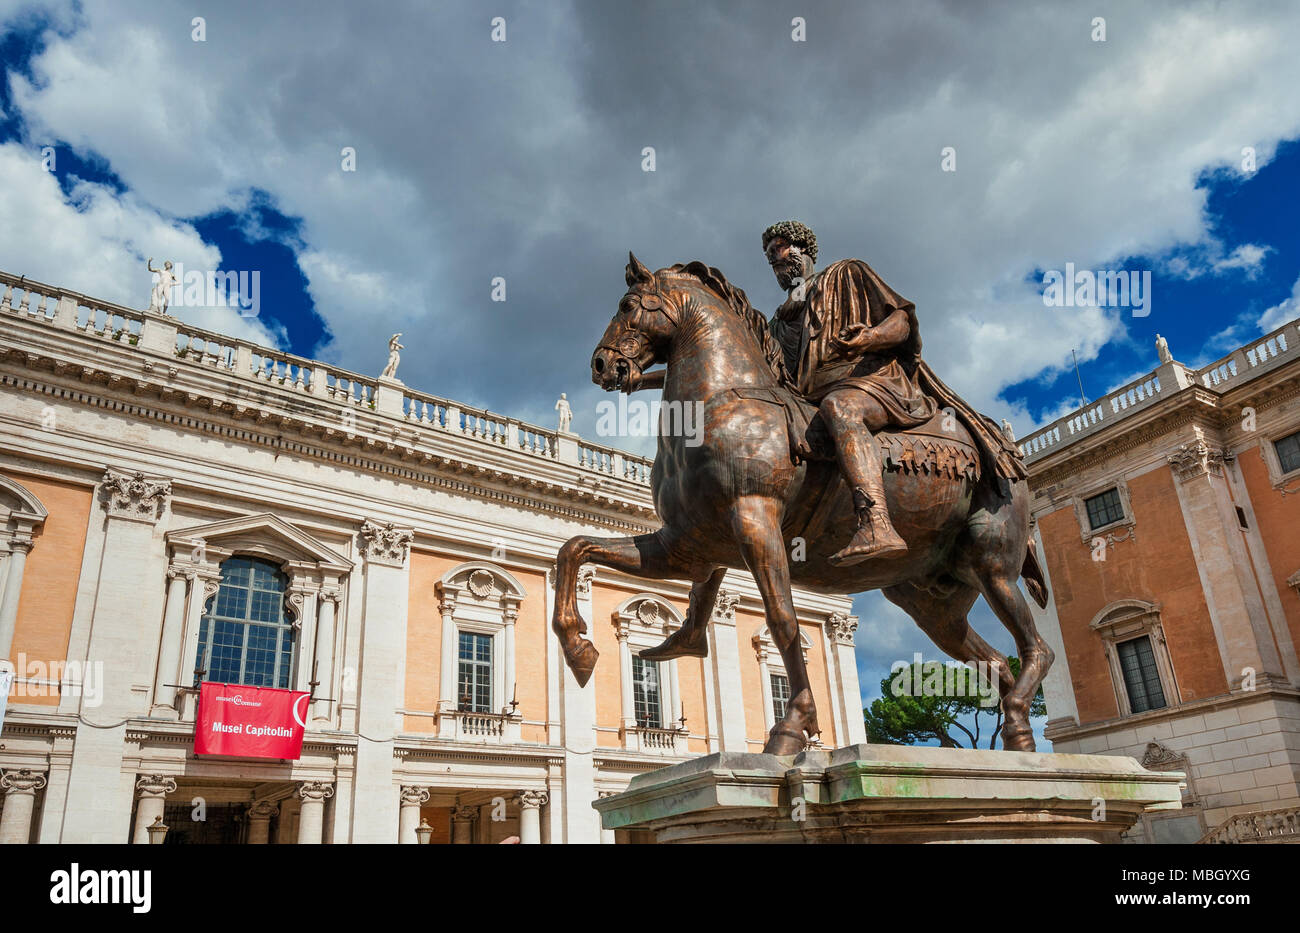 Musei Capitolini nel centro di Roma, il più antico museo pubblico in tutto il mondo, con la statua equestre di imperatore romano Marco Aurelio Foto Stock